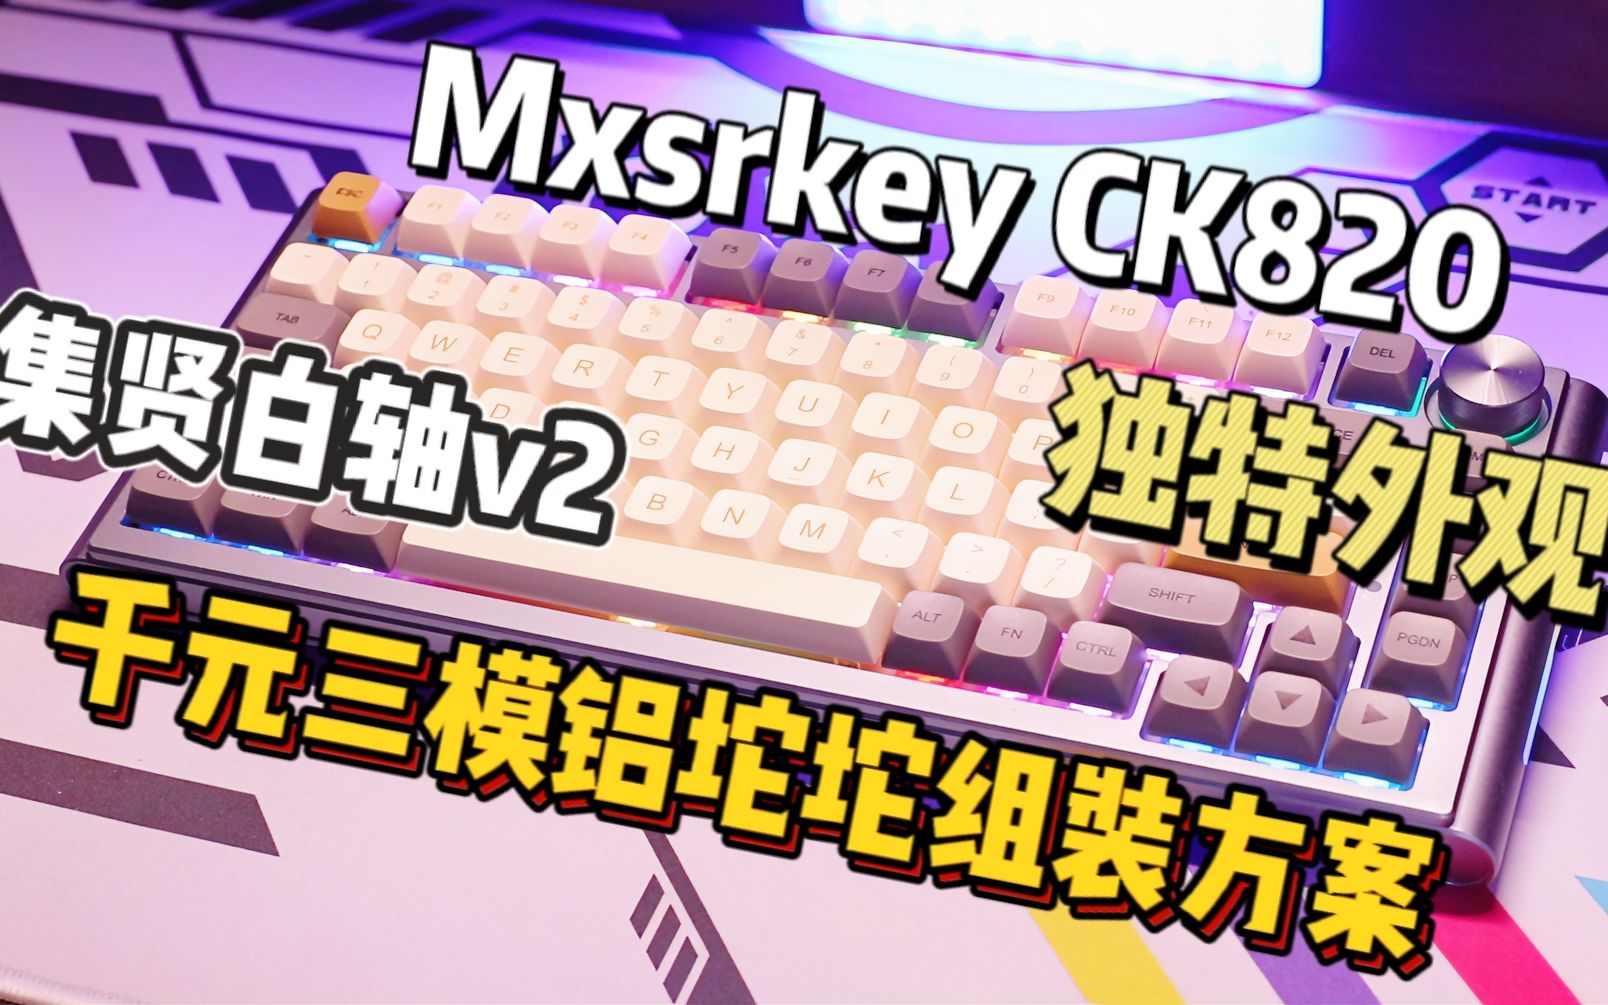 【'穷'客制】千元搭配出三模铝坨坨75键盘！有亮点但也有妥协的Mxrskey CK820套件+集贤白轴V2